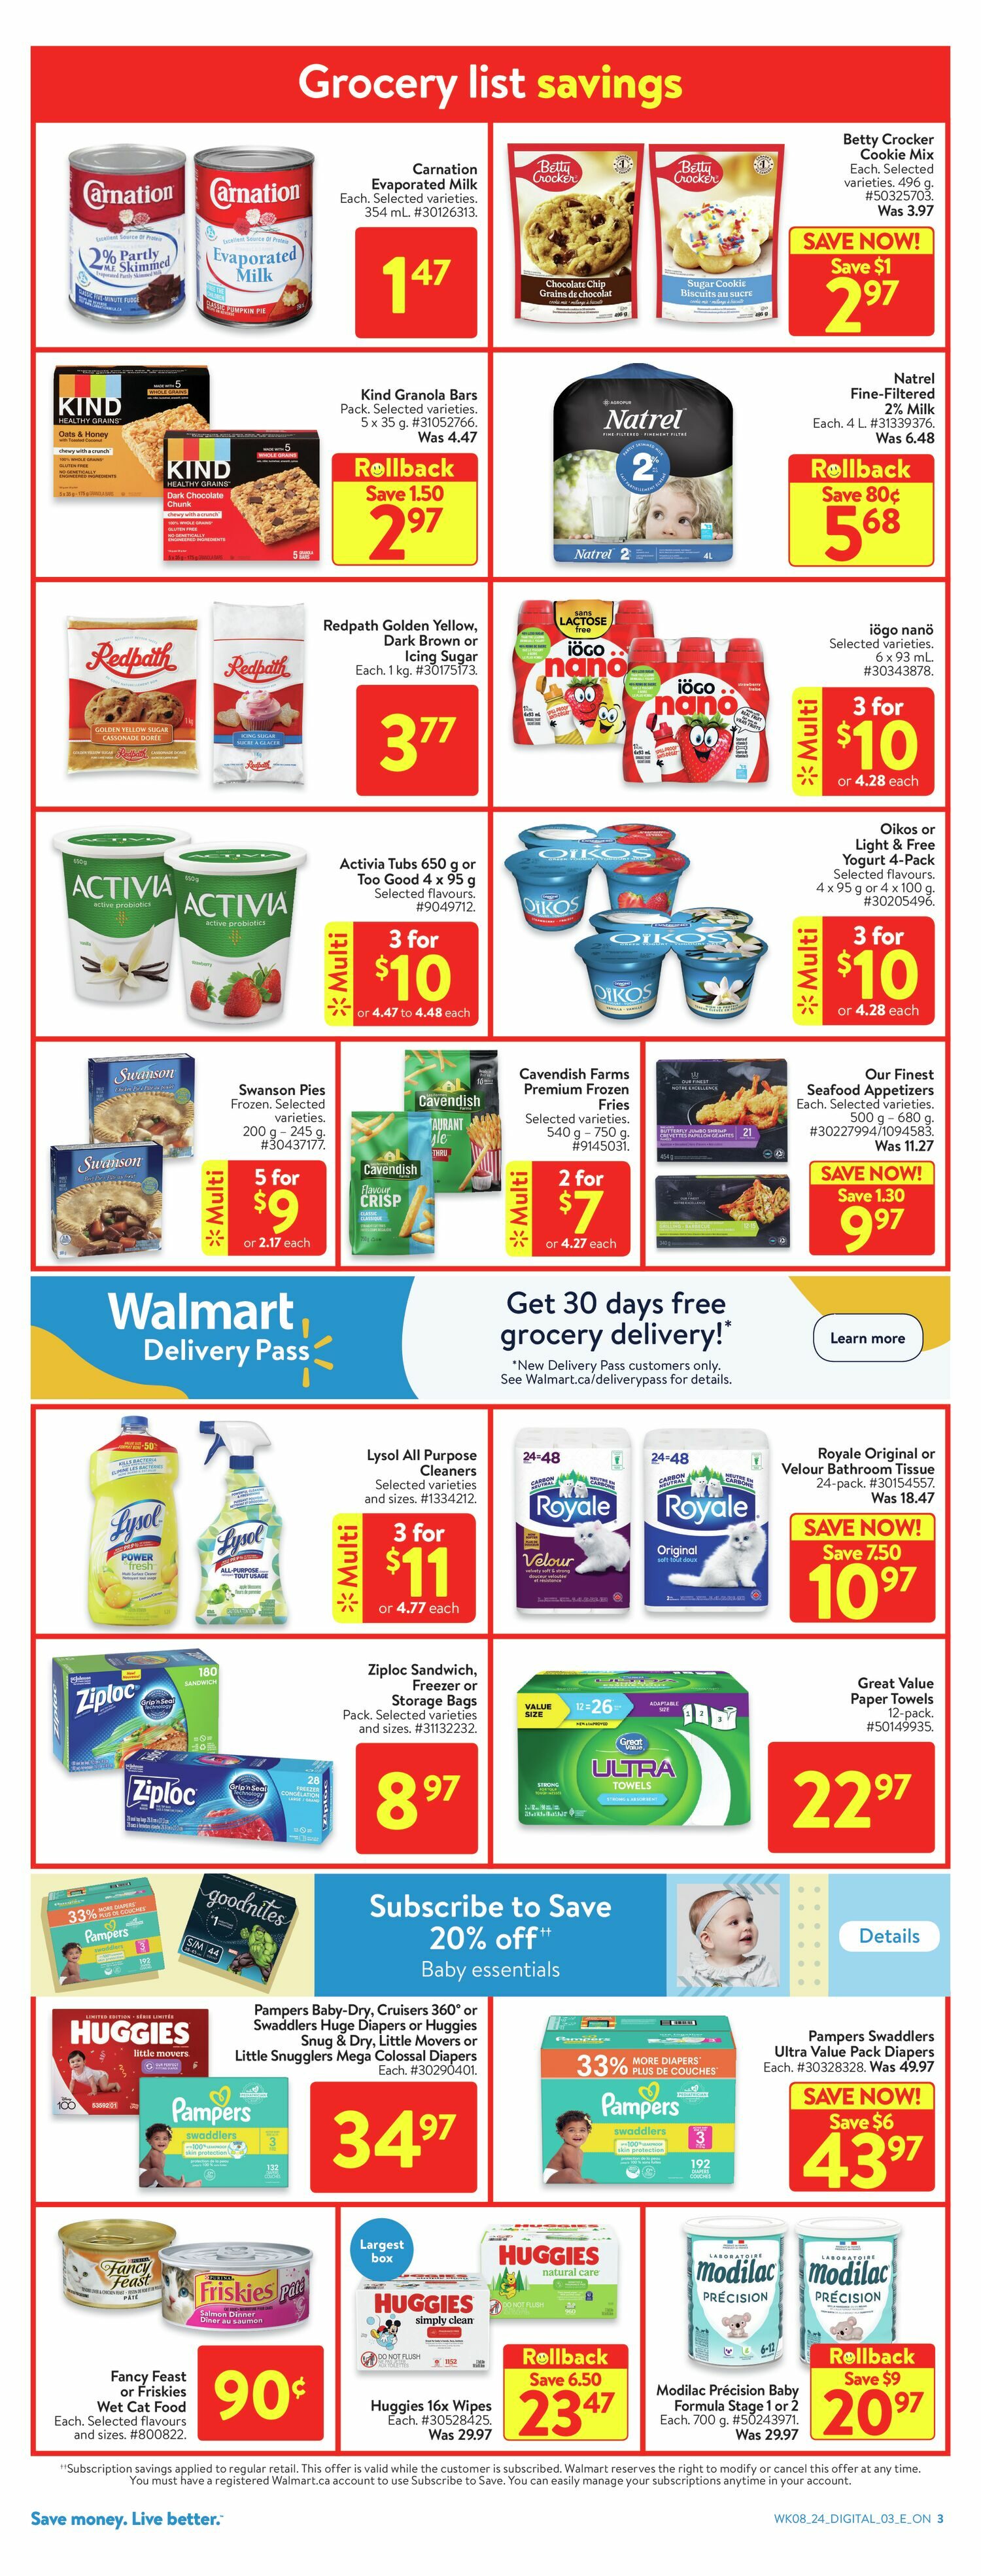 Walmart Weekly Flyer - Weekly Savings - Celebrate Rollbacks (ON) - Mar 14 –  20 